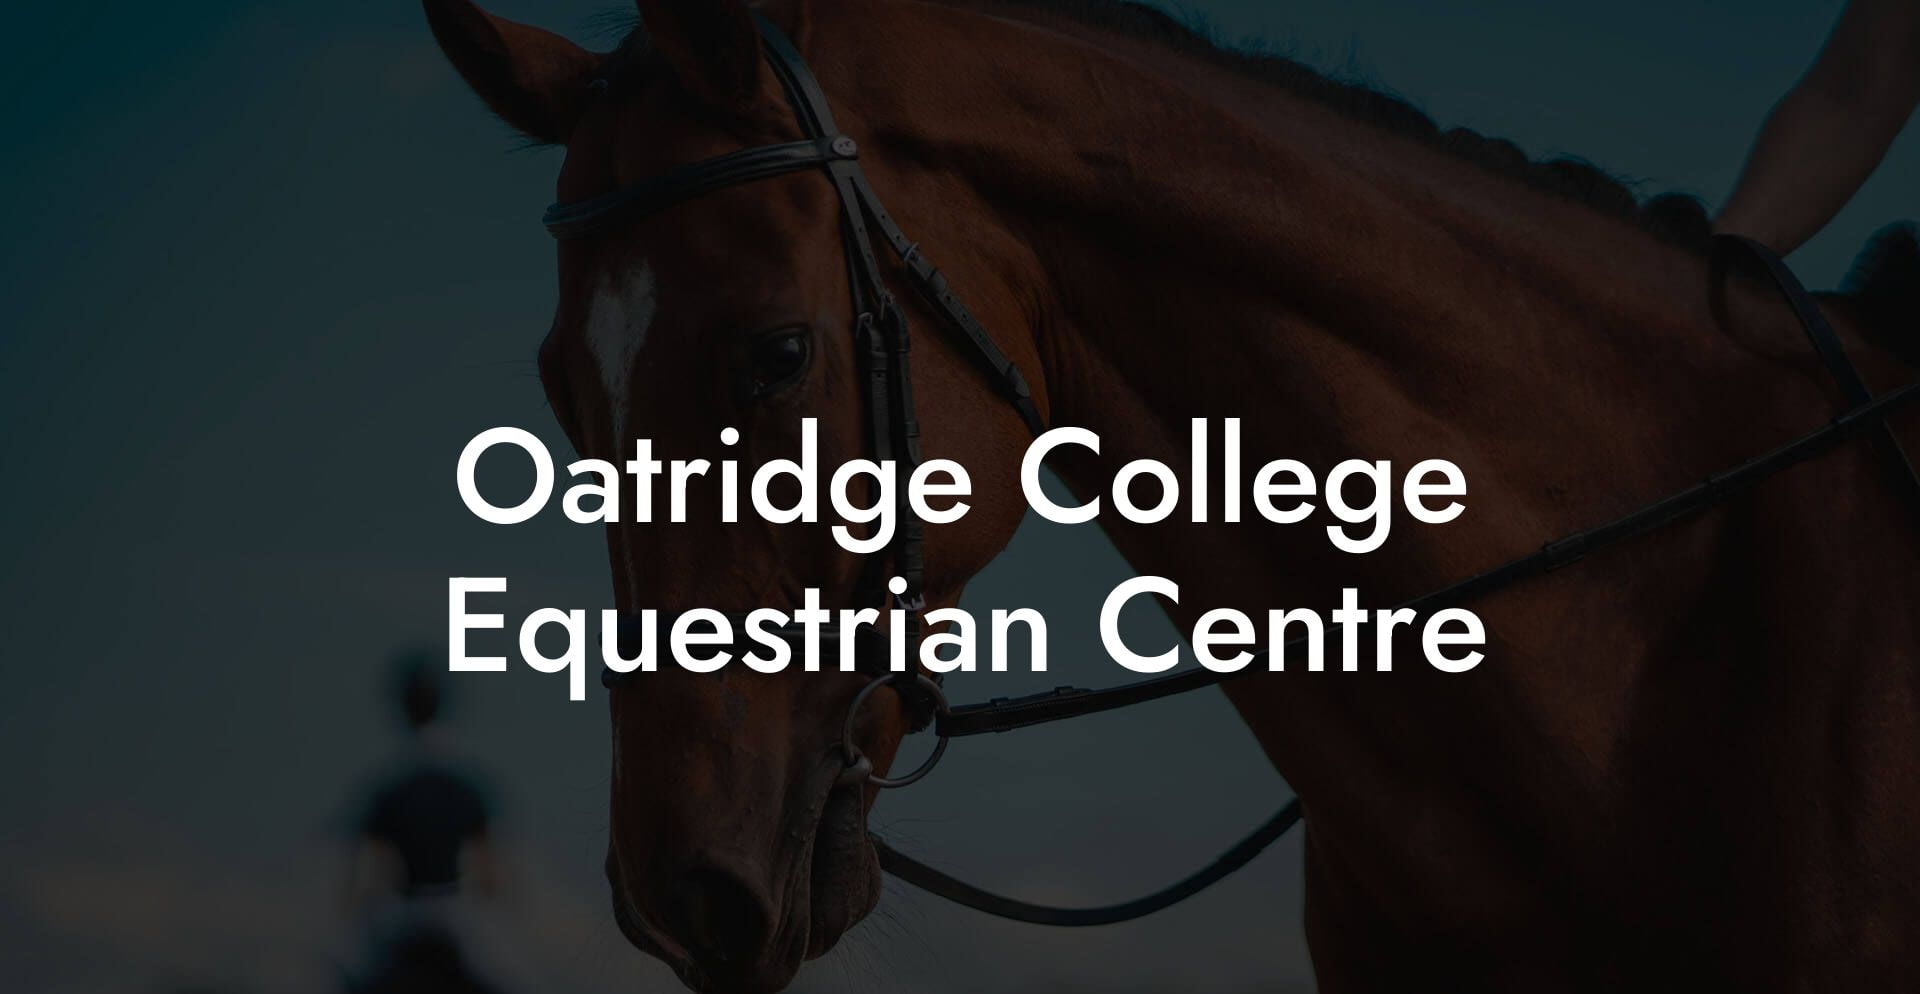 Oatridge College Equestrian Centre